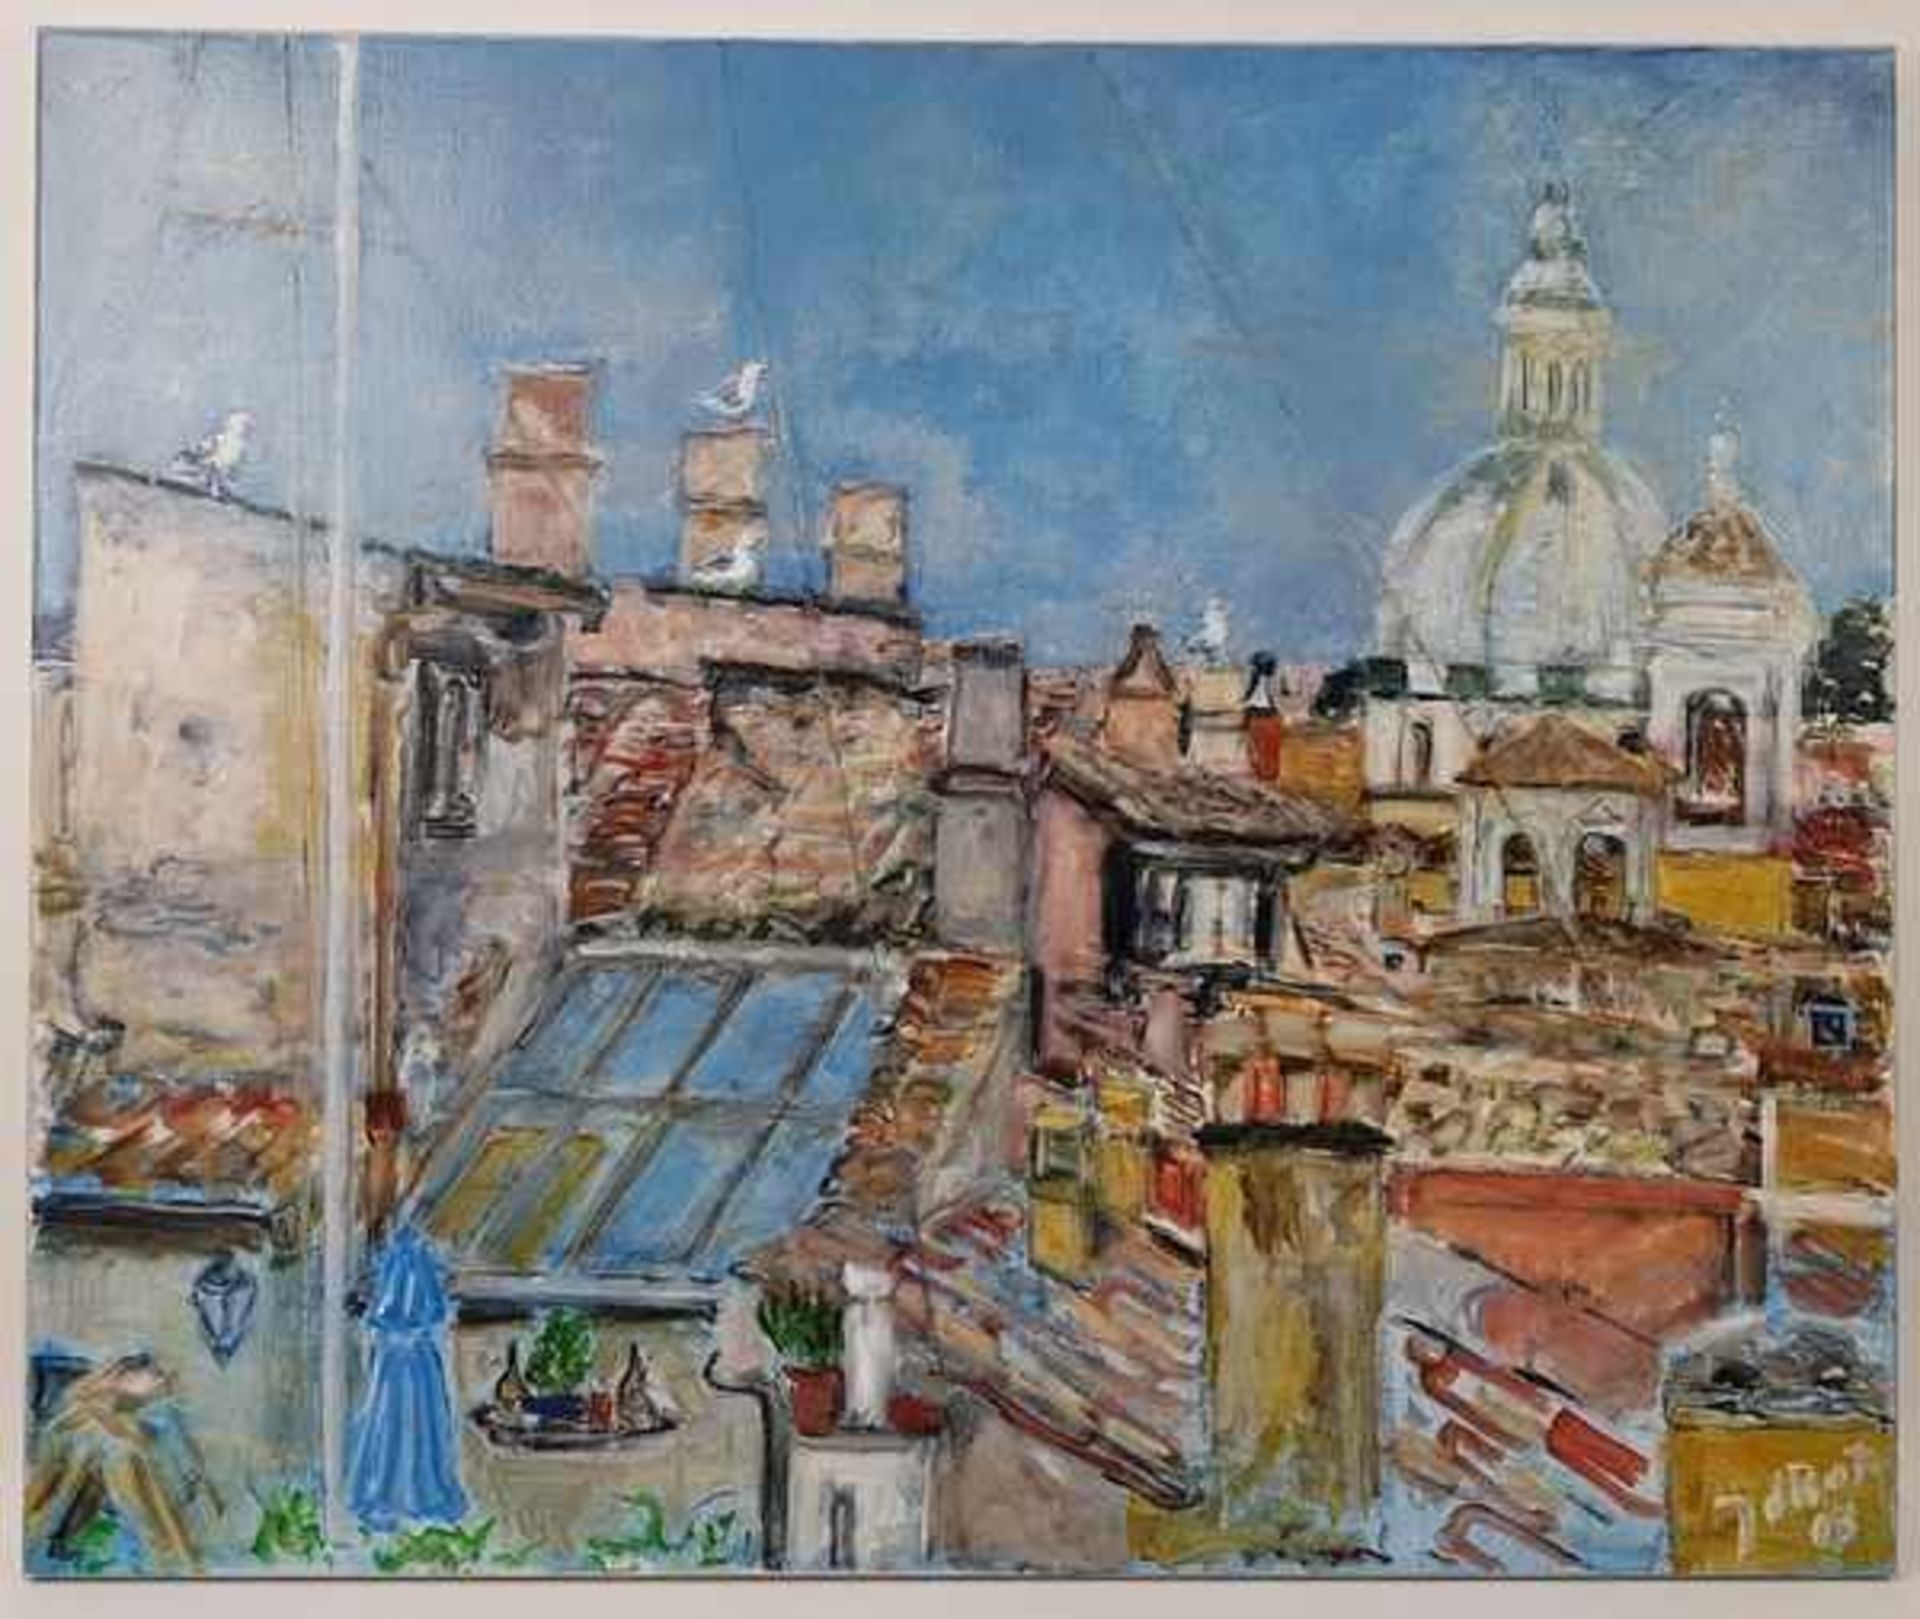 (Kunst) Schilderij "Good morning Rome", olieverf op doek, gesigneerd J. de BotJoan de Bot (1948)